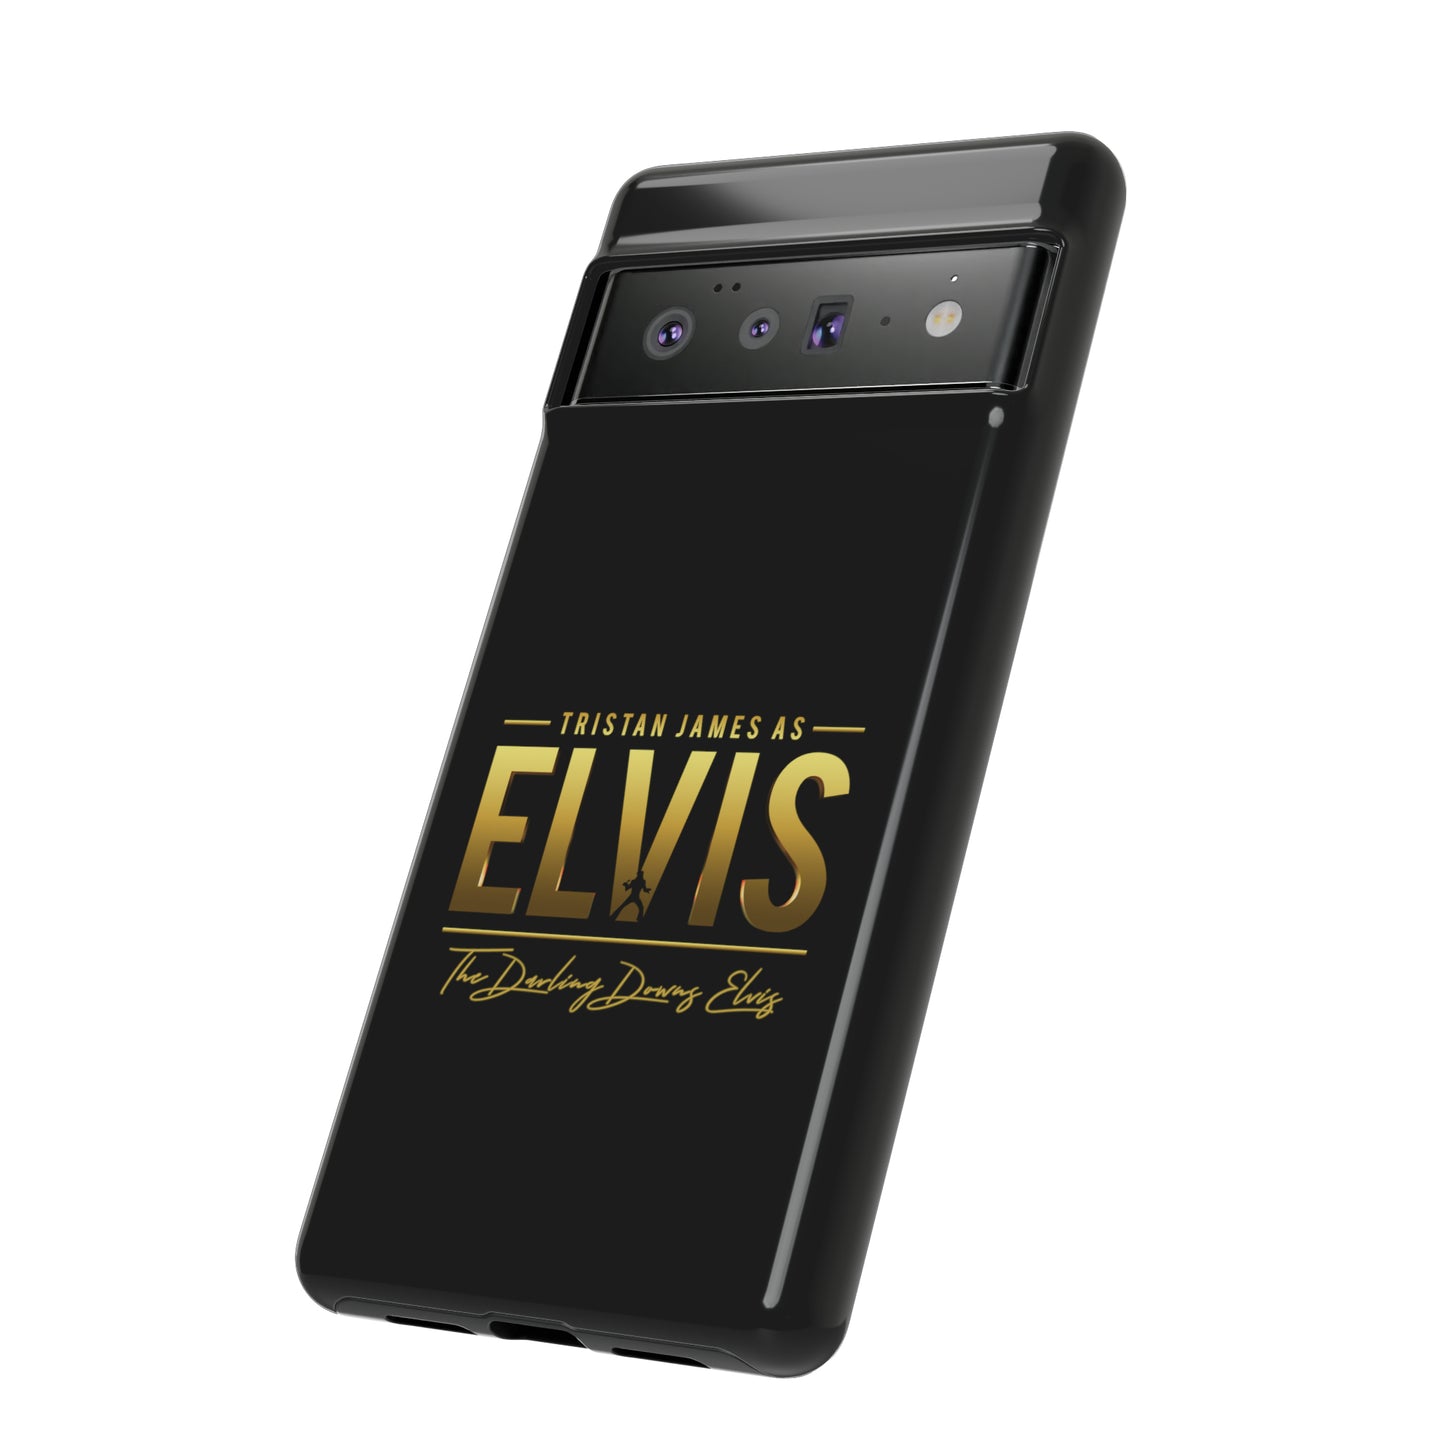 Tristan James As Elvis - Tough Phone Case